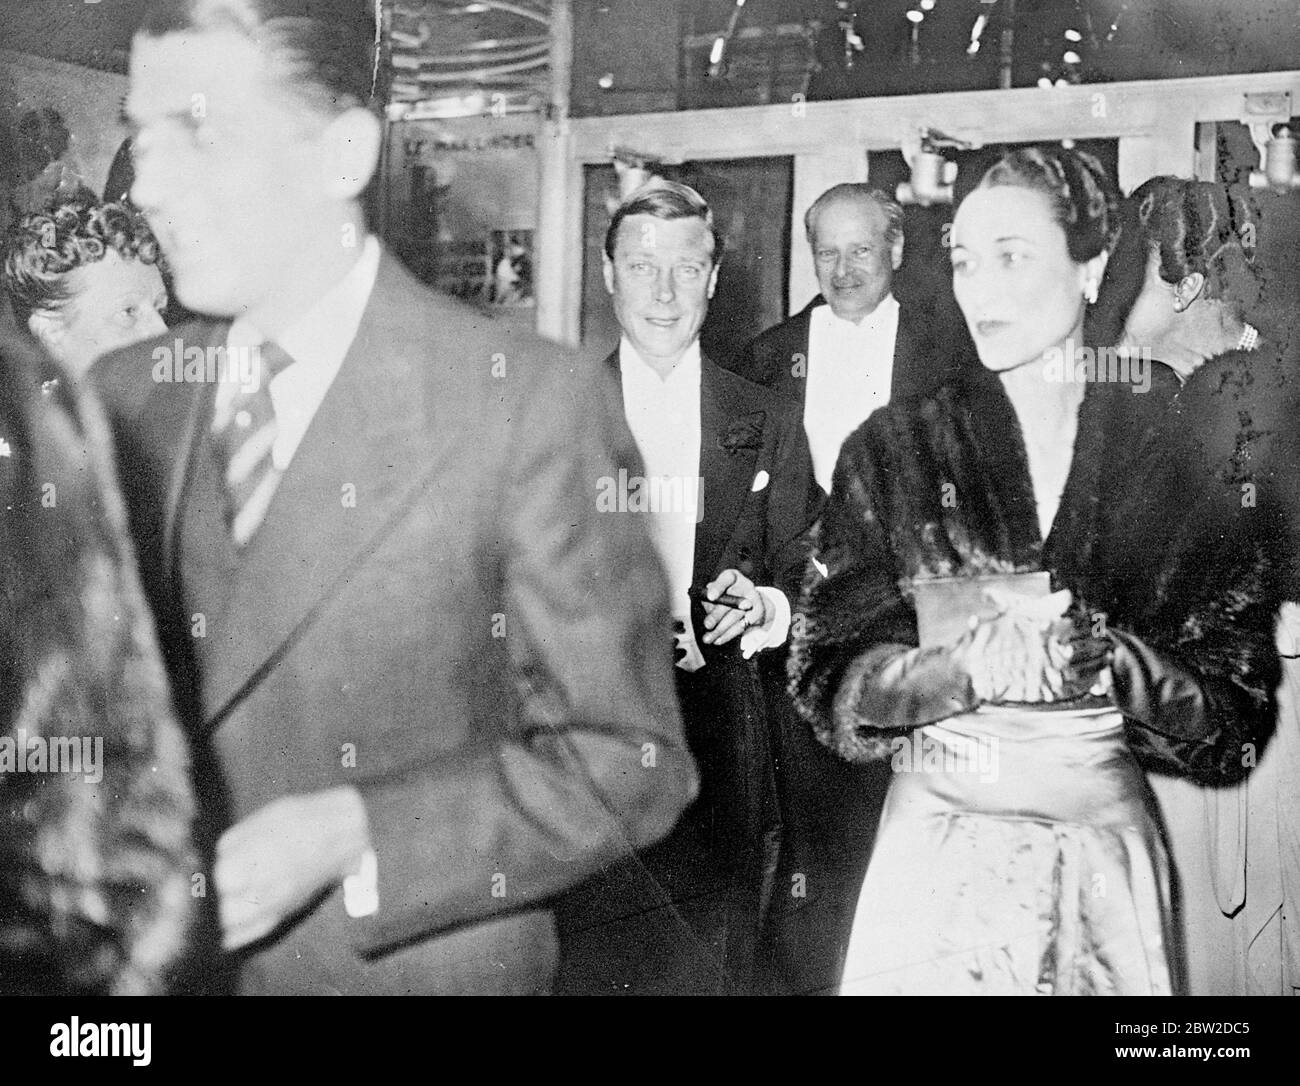 Der Herzog und die Herzogin von Windsor, Prinz Edward VIII und Wallis Simpson, besuchen die Premiere des Films Katie im Marivaux Theater in Paris. Foto zeigt: Der Herzog und die Herzogin kommen zur Premiere. 20. Oktober 1938 Stockfoto